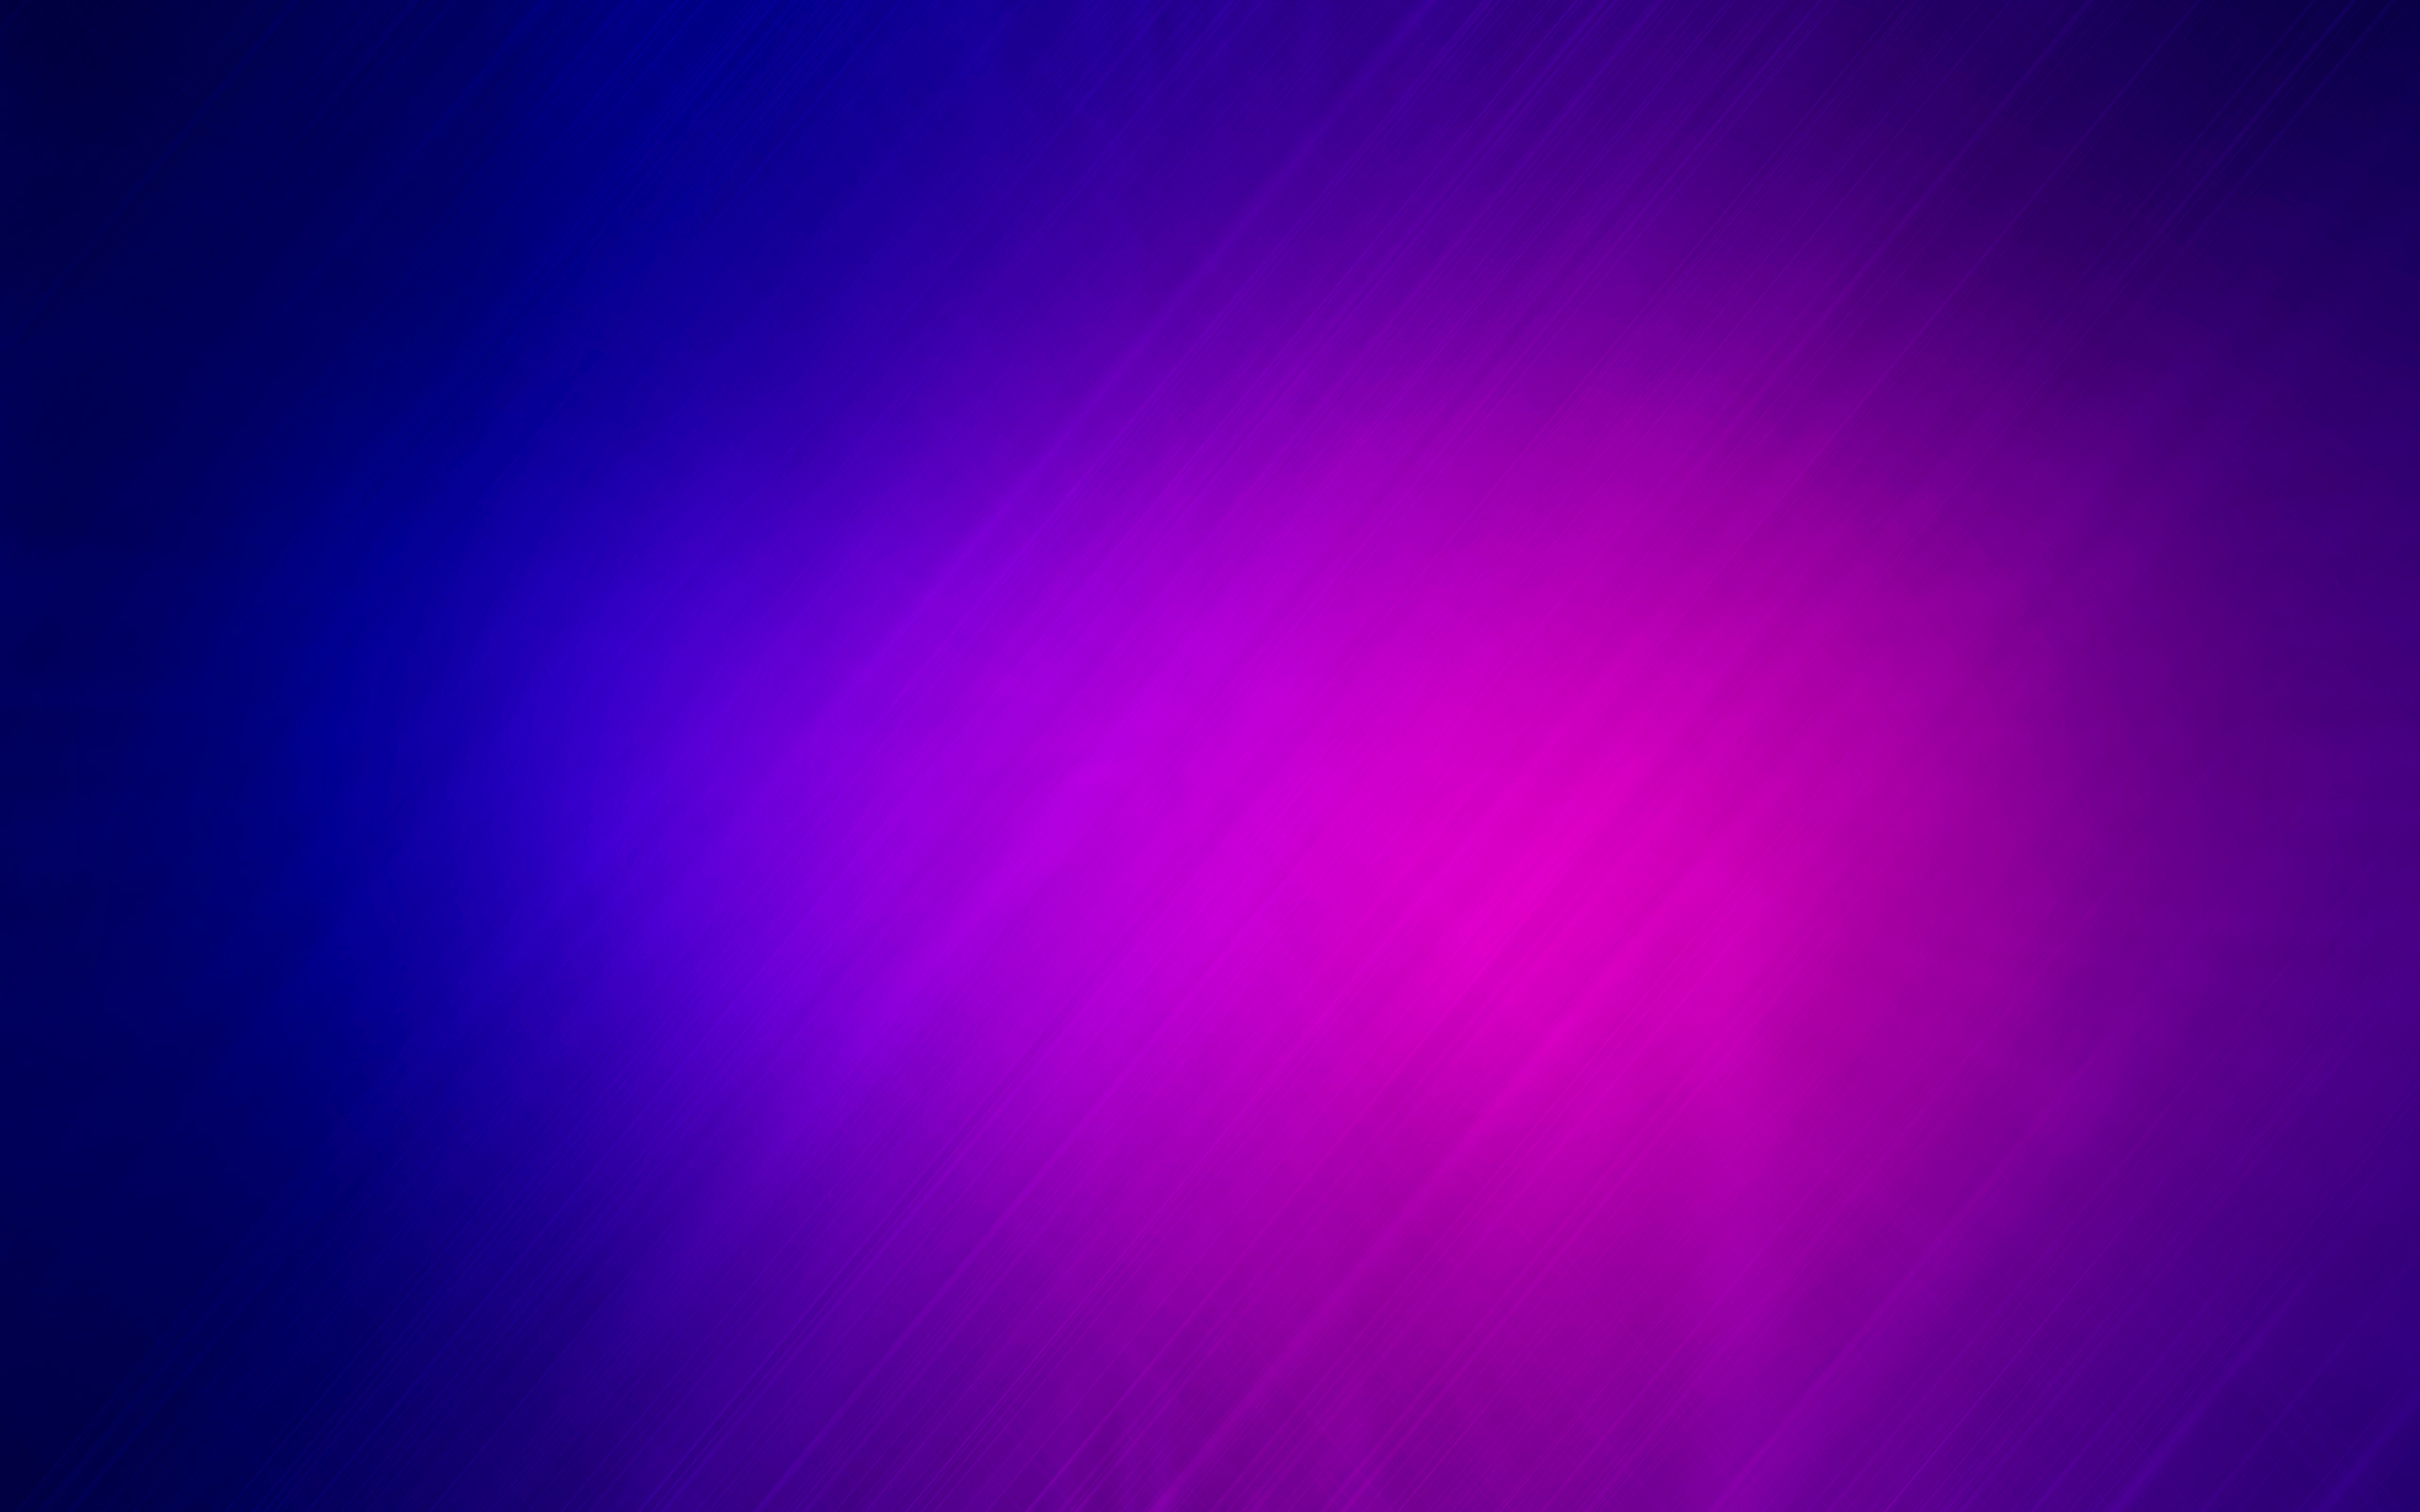 Фиолетовый фон без ничего